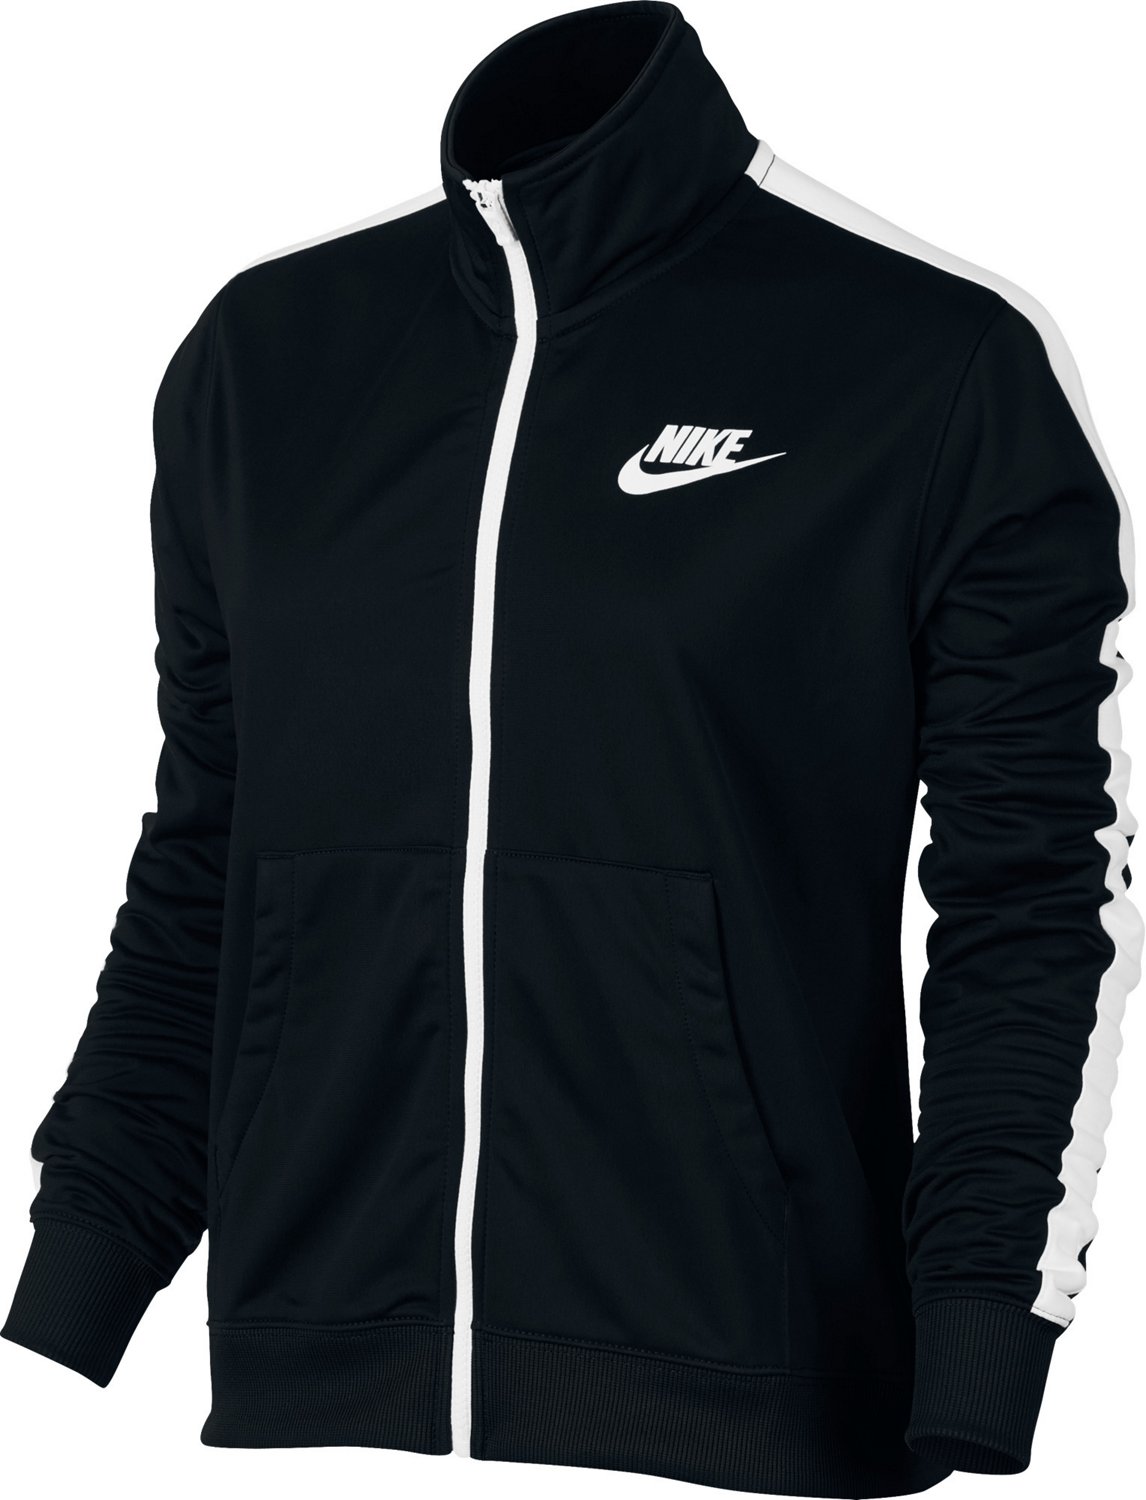 black nike track jacket Online Shopping 